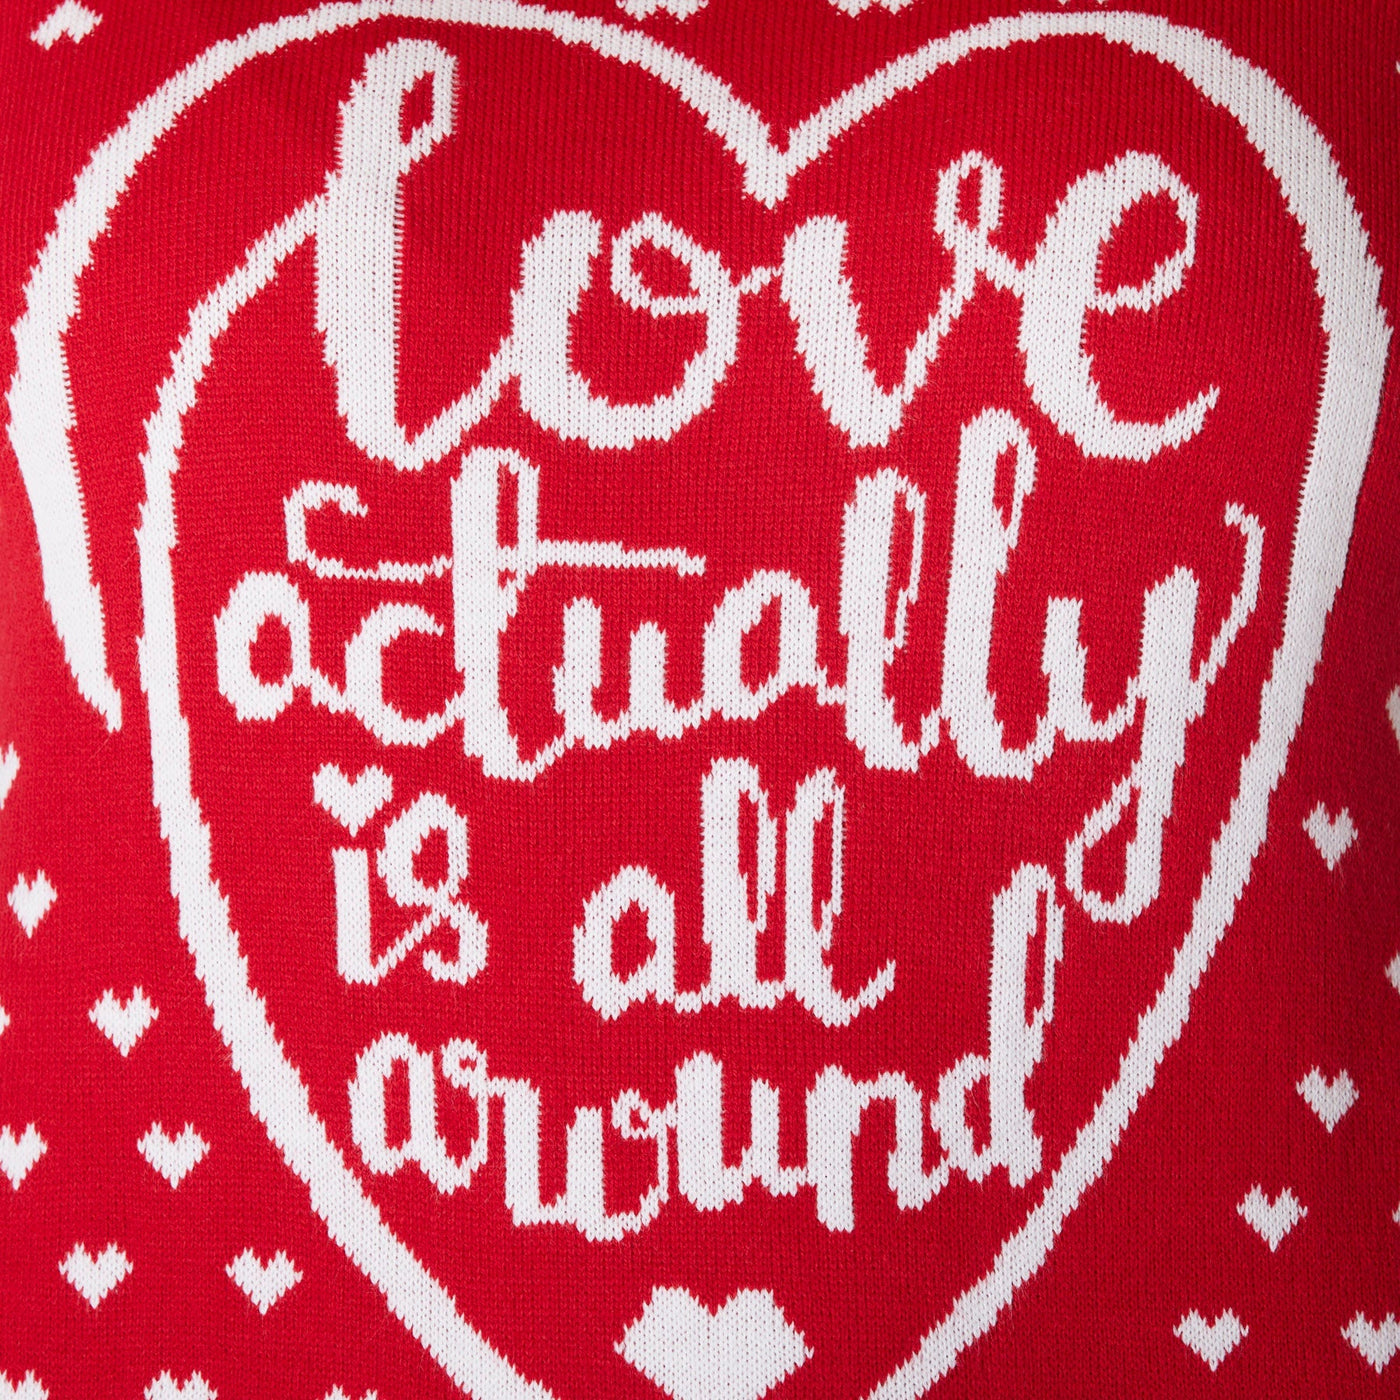 Love Actually Is All Around Kersttrui Heren